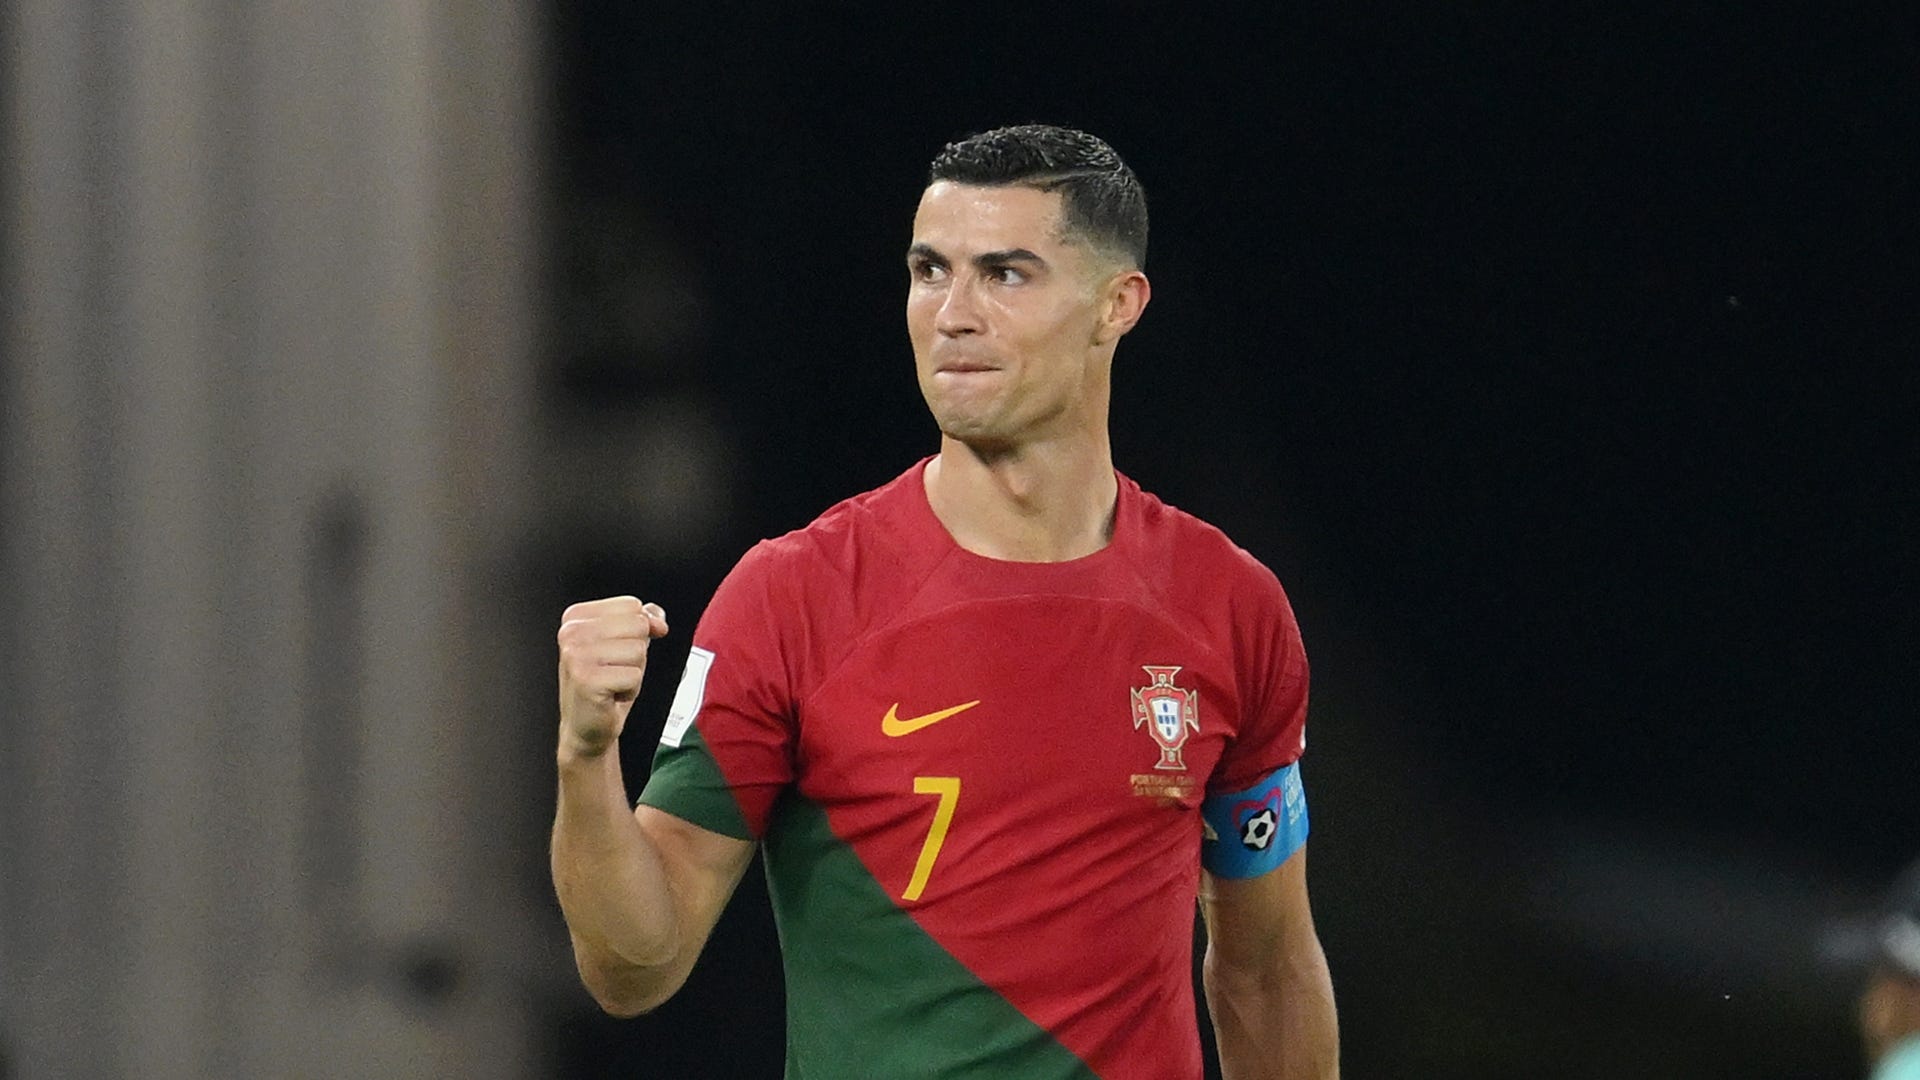 Nach Abschied bei Manchester United: Cristiano Ronaldo erhält wohl nächstes Mega-Angebot | Goal.com Deutschland